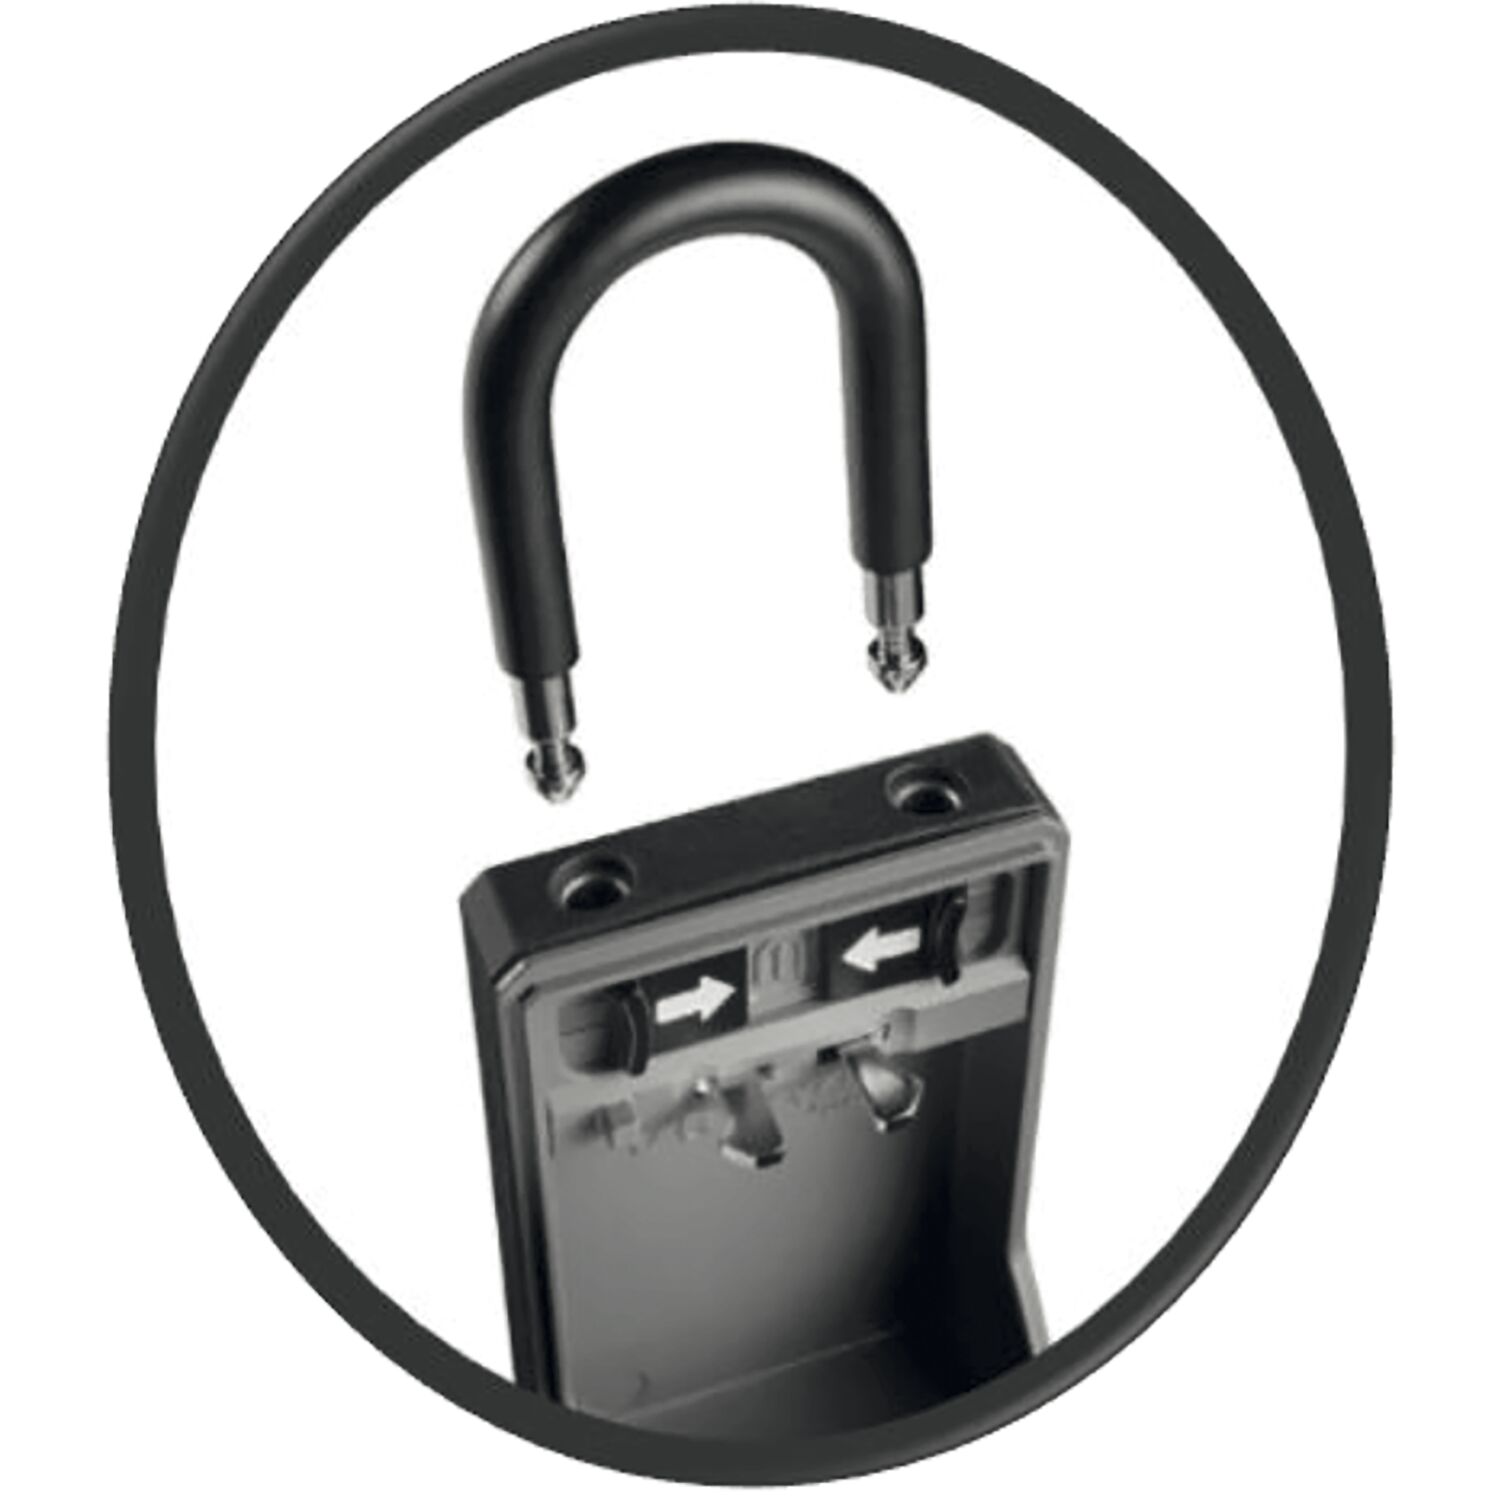 MASTER LOCK Schlüsselsafe 5480 EURD mit abnehmbarem Bügel, schwarz/grau